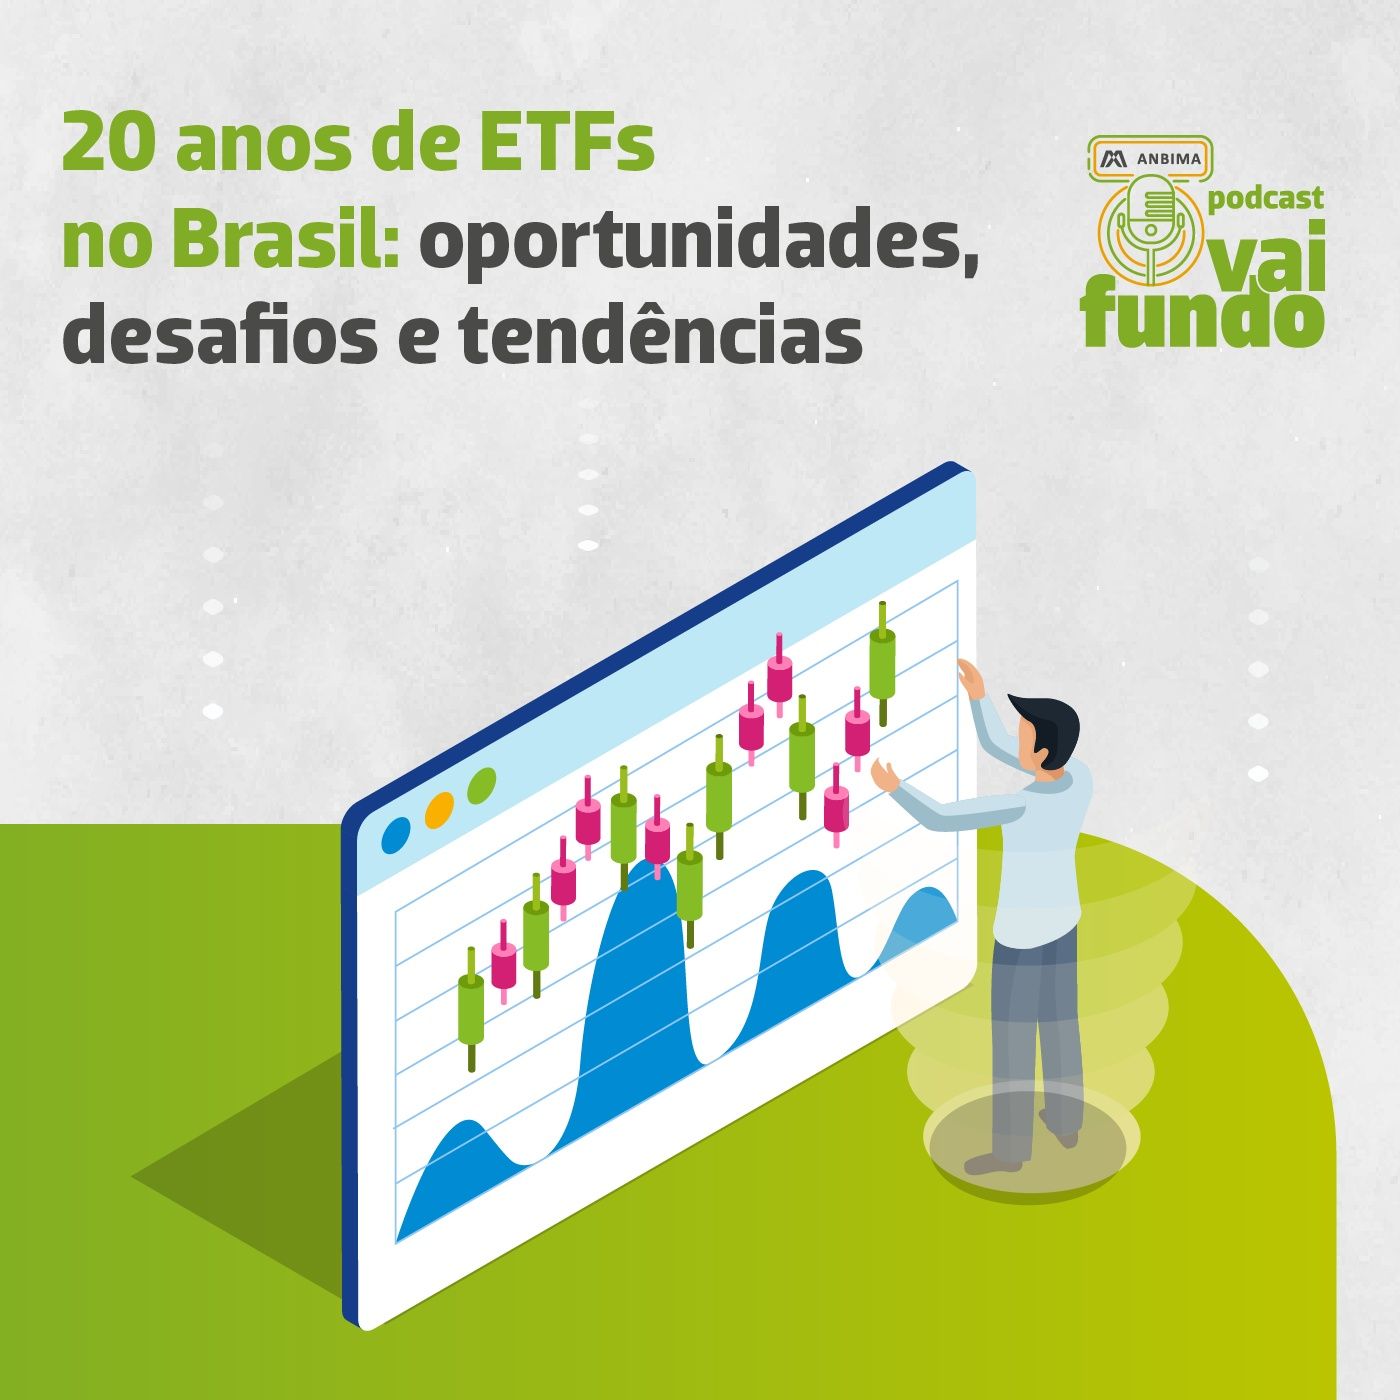 20 anos de ETFs no Brasil: oportunidades, desafios e tendências